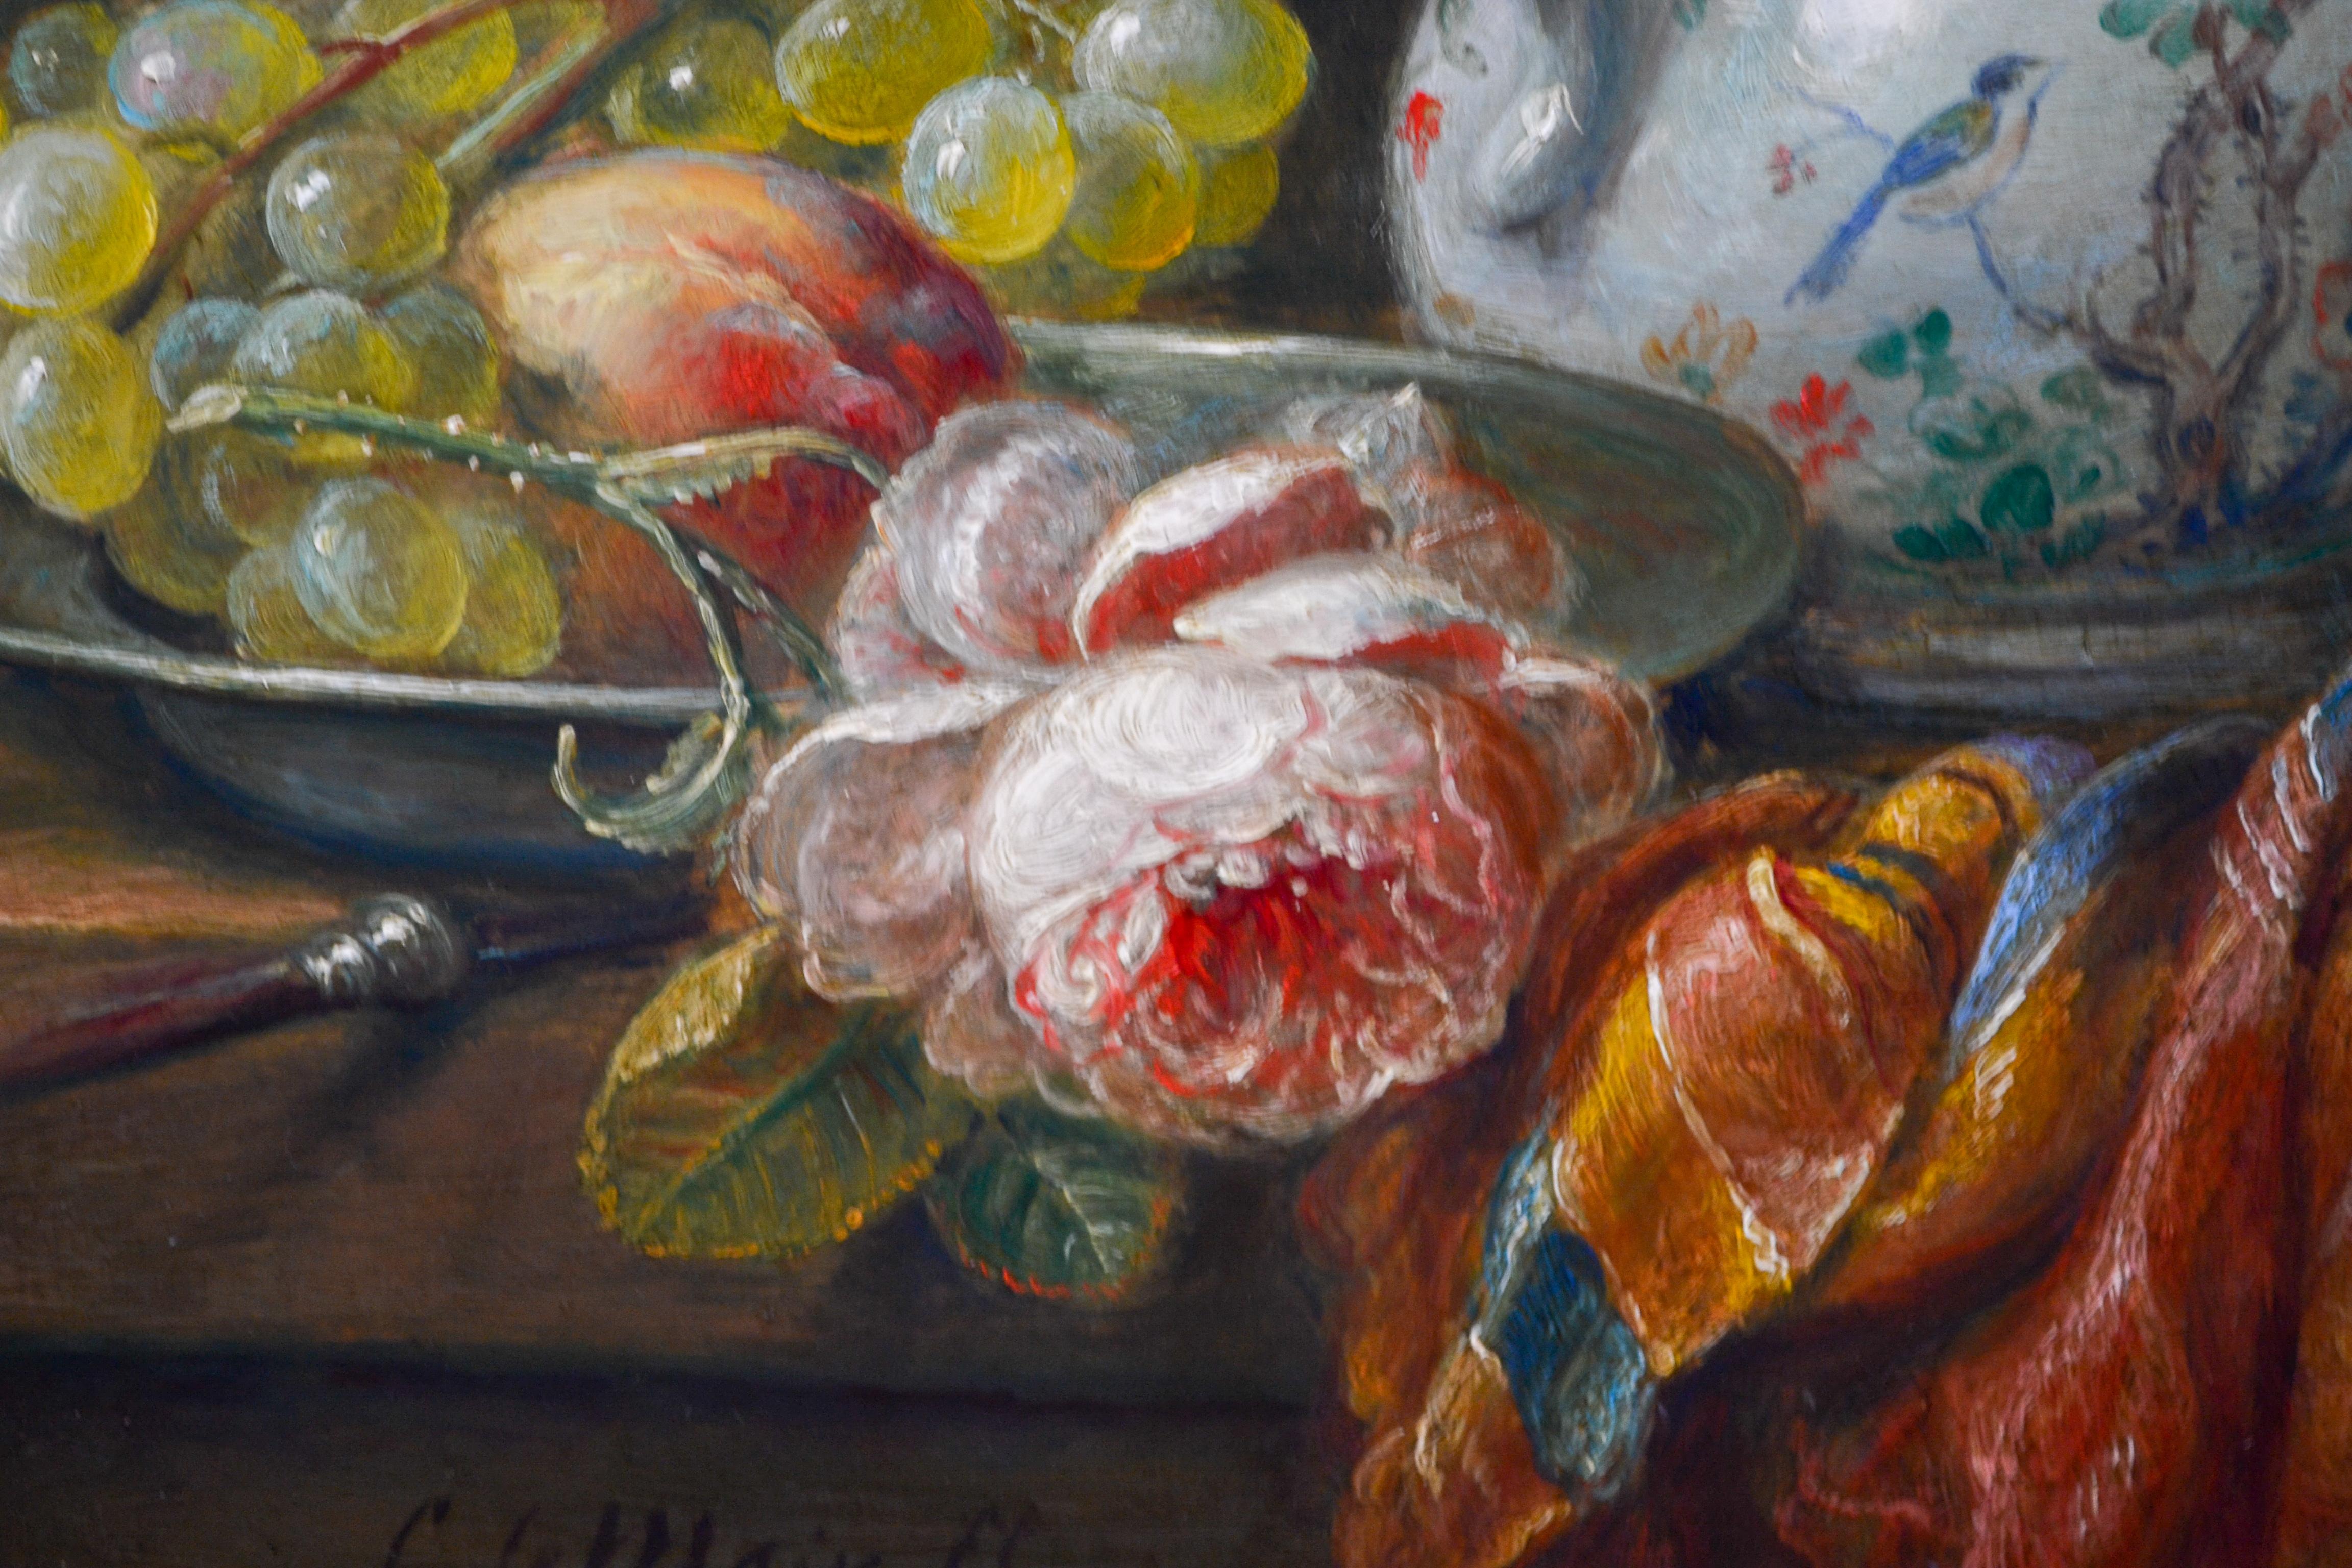 Chinesischer Krug, Trauben und Blumen – holländisches Stillleben im klassischen Stil (Romantik), Painting, von Cornelis Le Mair